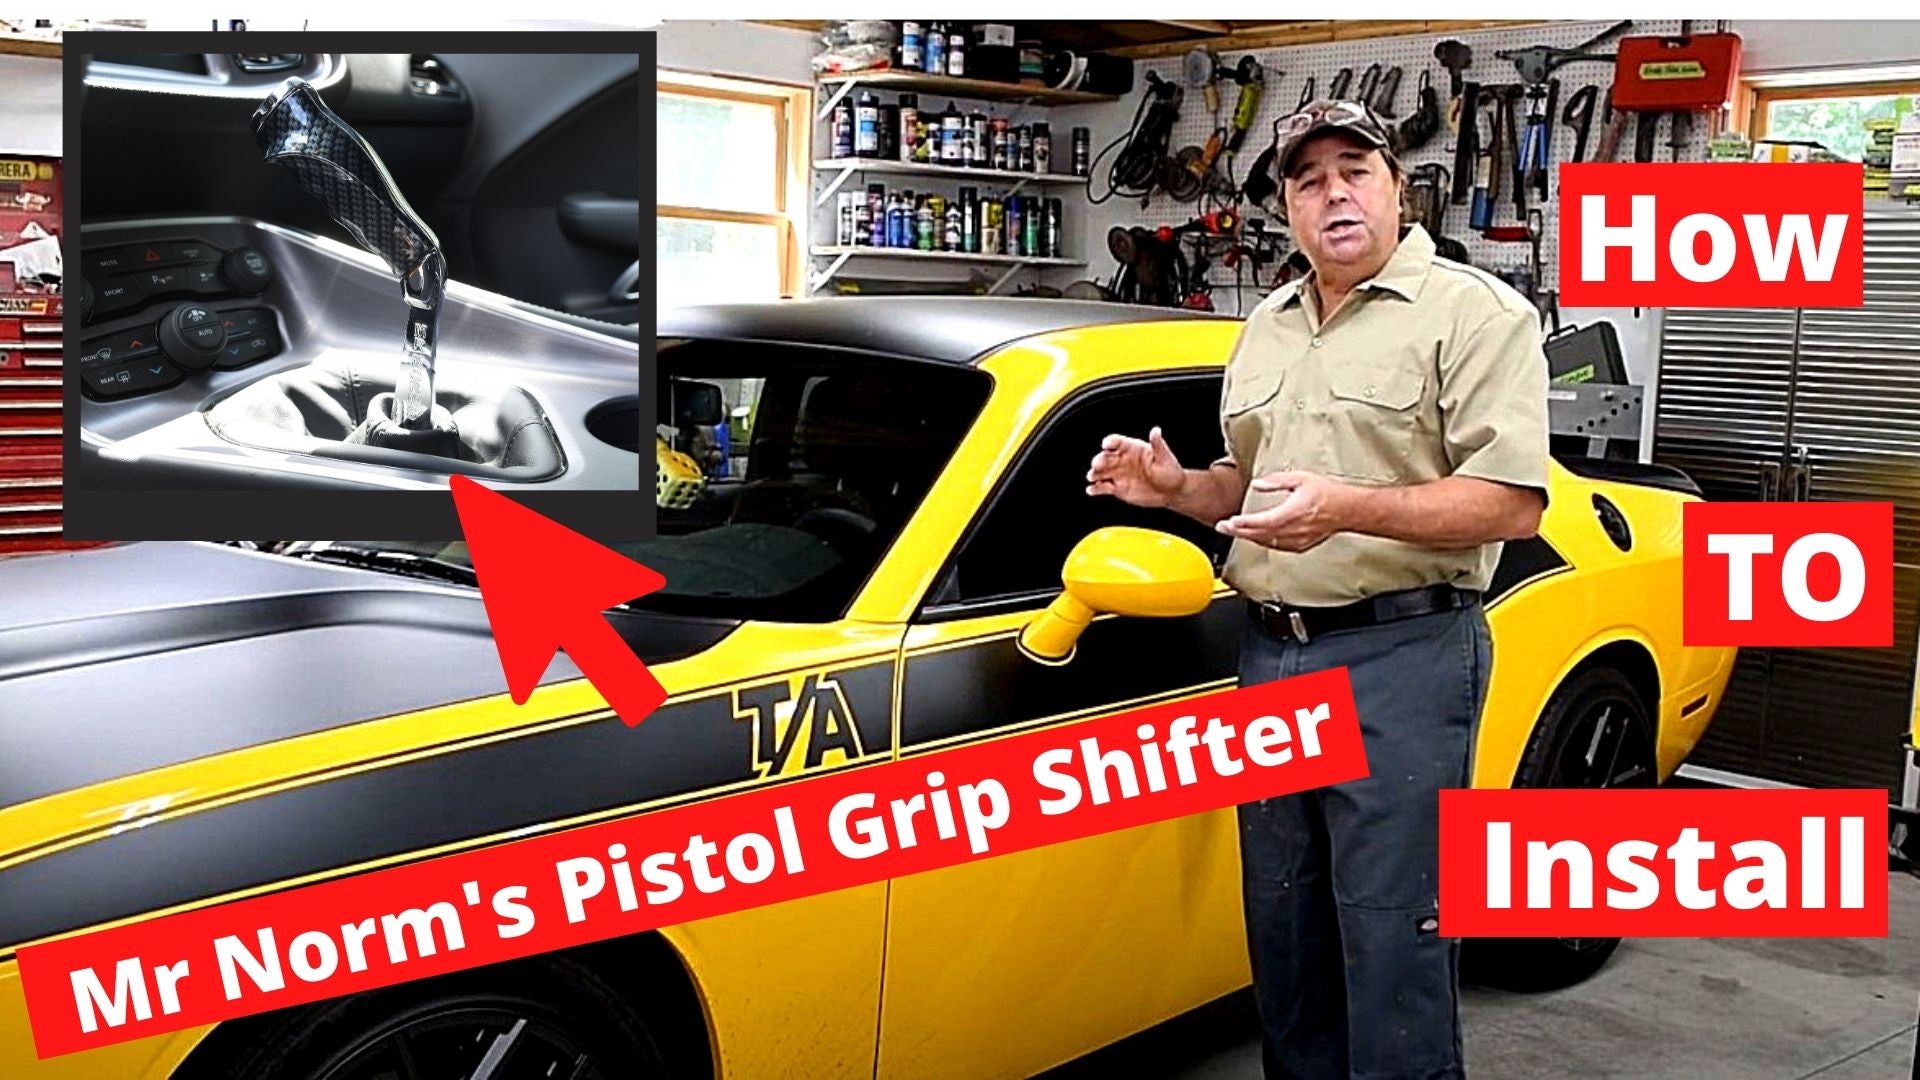 Hurst Mopar Pistol Grip Shifter Install